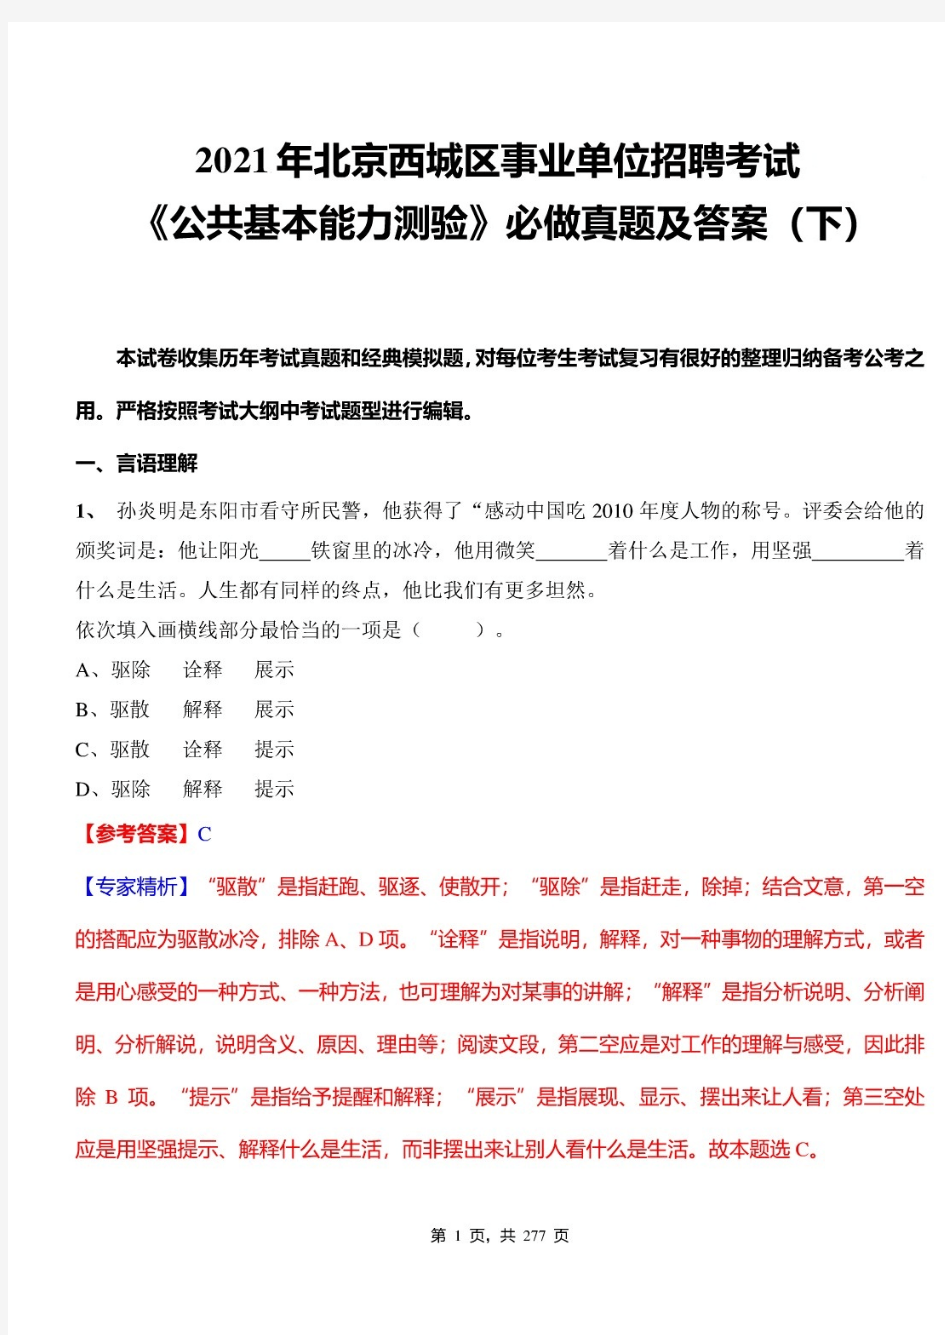 2021年北京西城区事业单位招聘考试《公共基本能力测验》必做真题(下)及标准答案